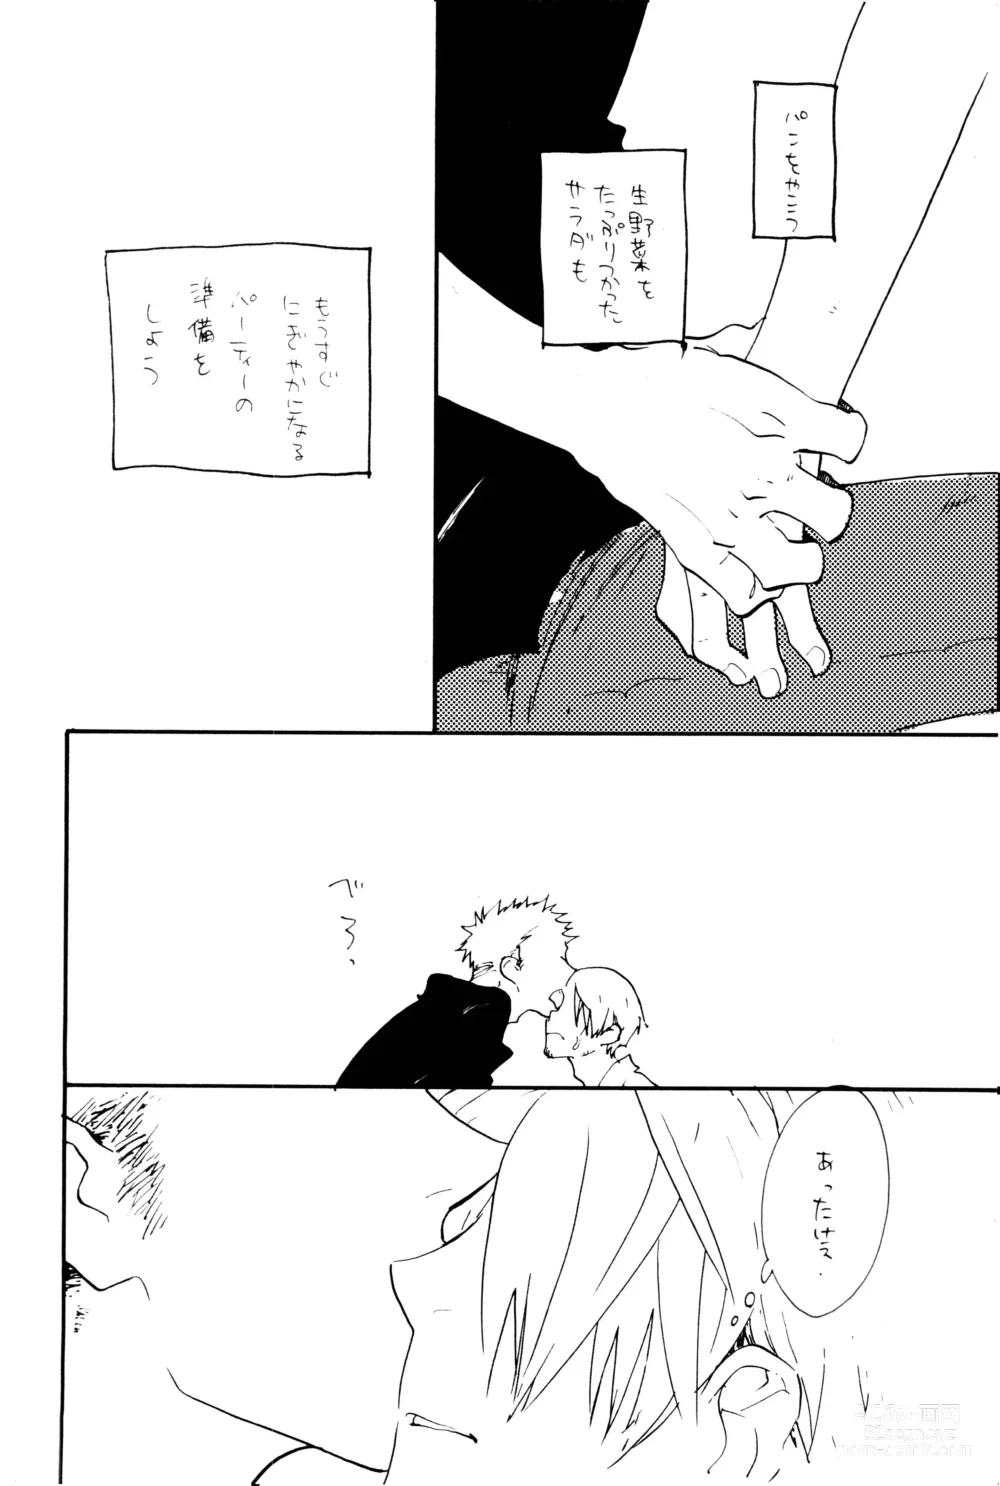 Page 57 of doujinshi 0-do kara Machibito Kitaru